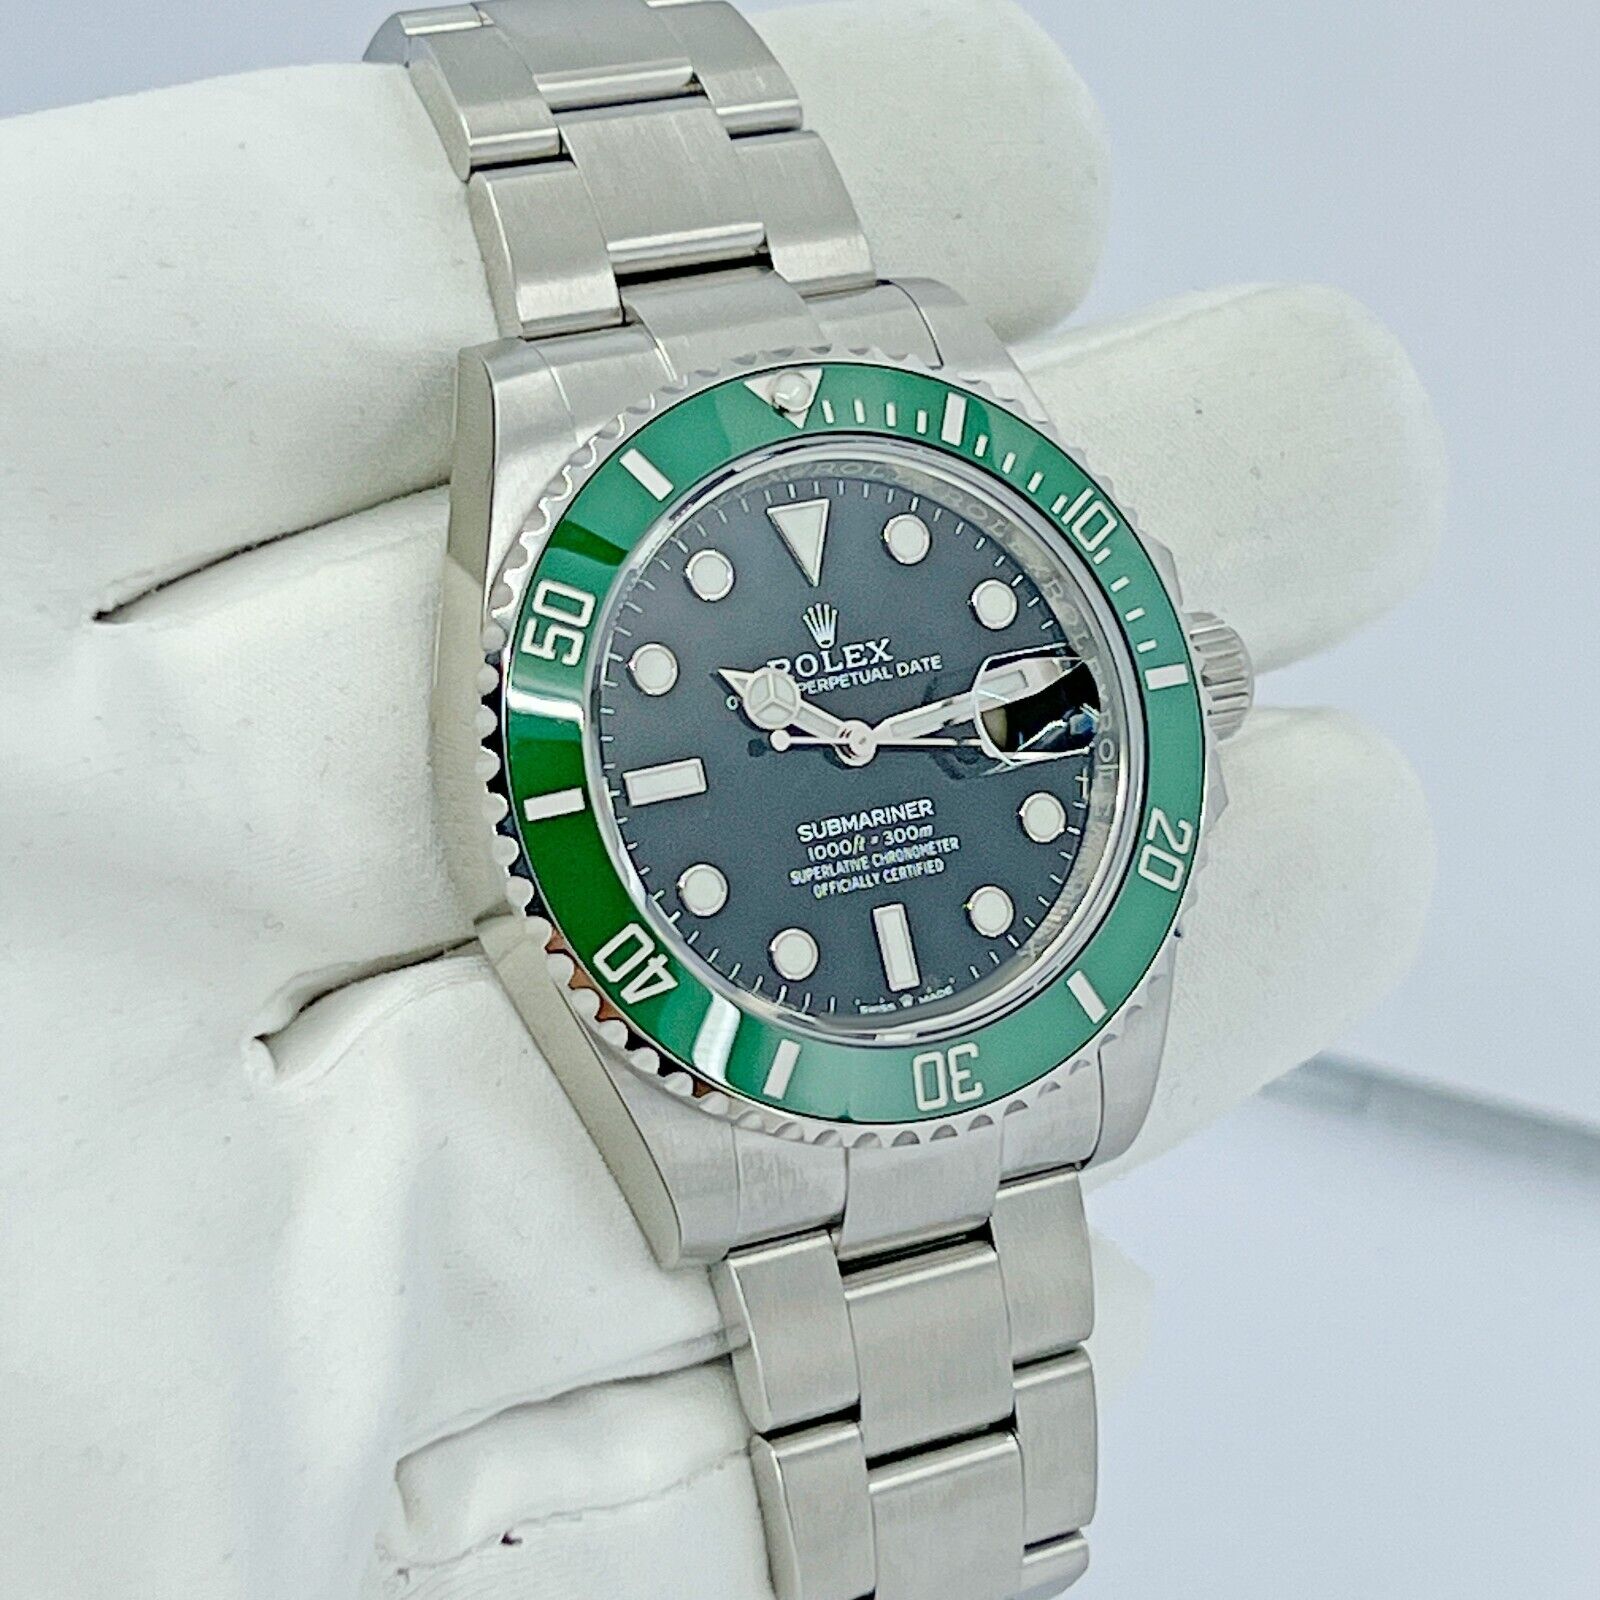 Rolex Submariner Green Kermit Cerachrom Mens Watch 126610LV Unworn